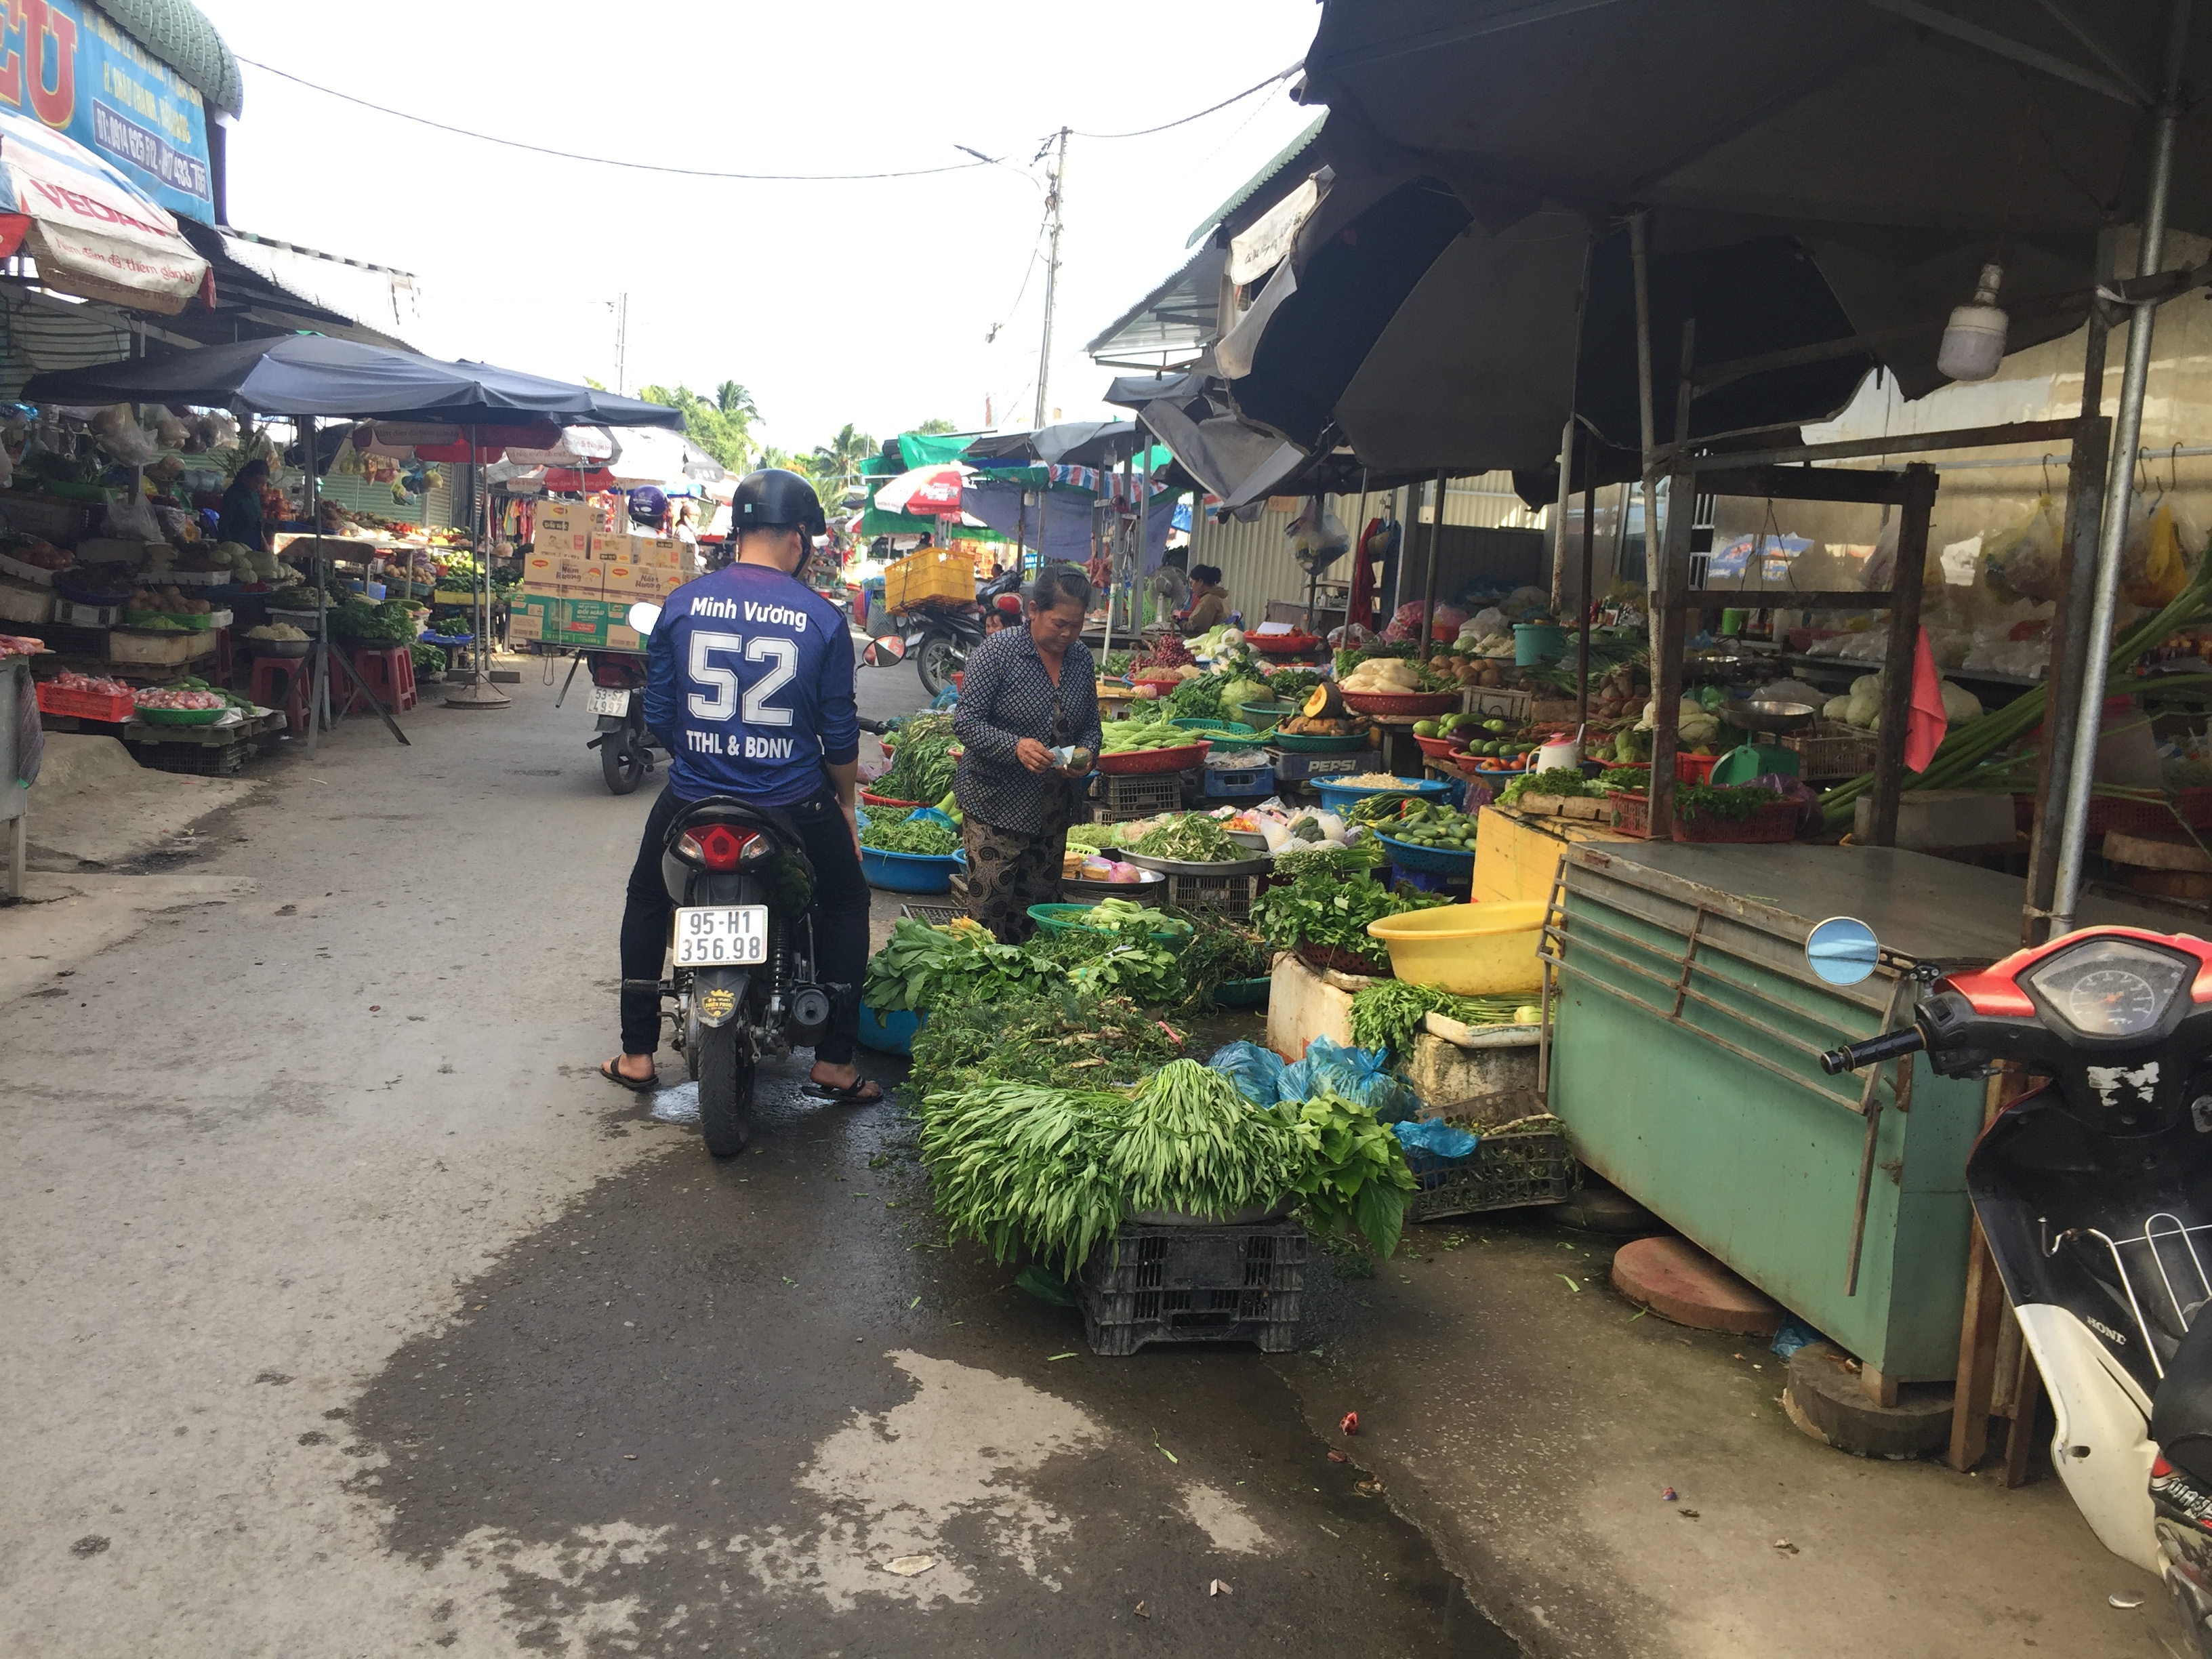  Song song khu chợ truyền thống là nhóm chợ tạm đang cạnh tranh với khu chợ truyền thống.